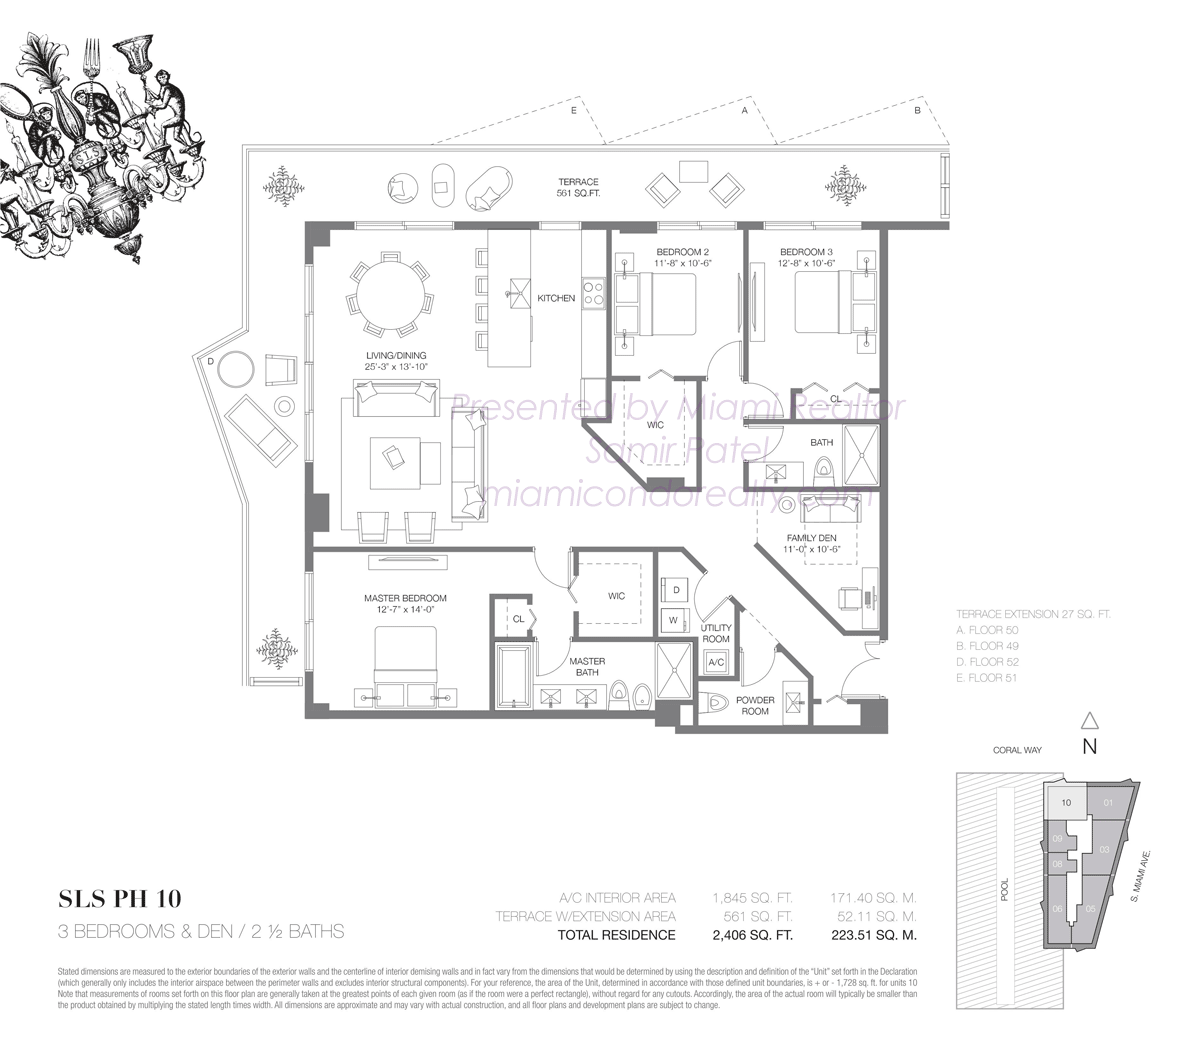 SLS Brickell Penthouse 10 Floorplan